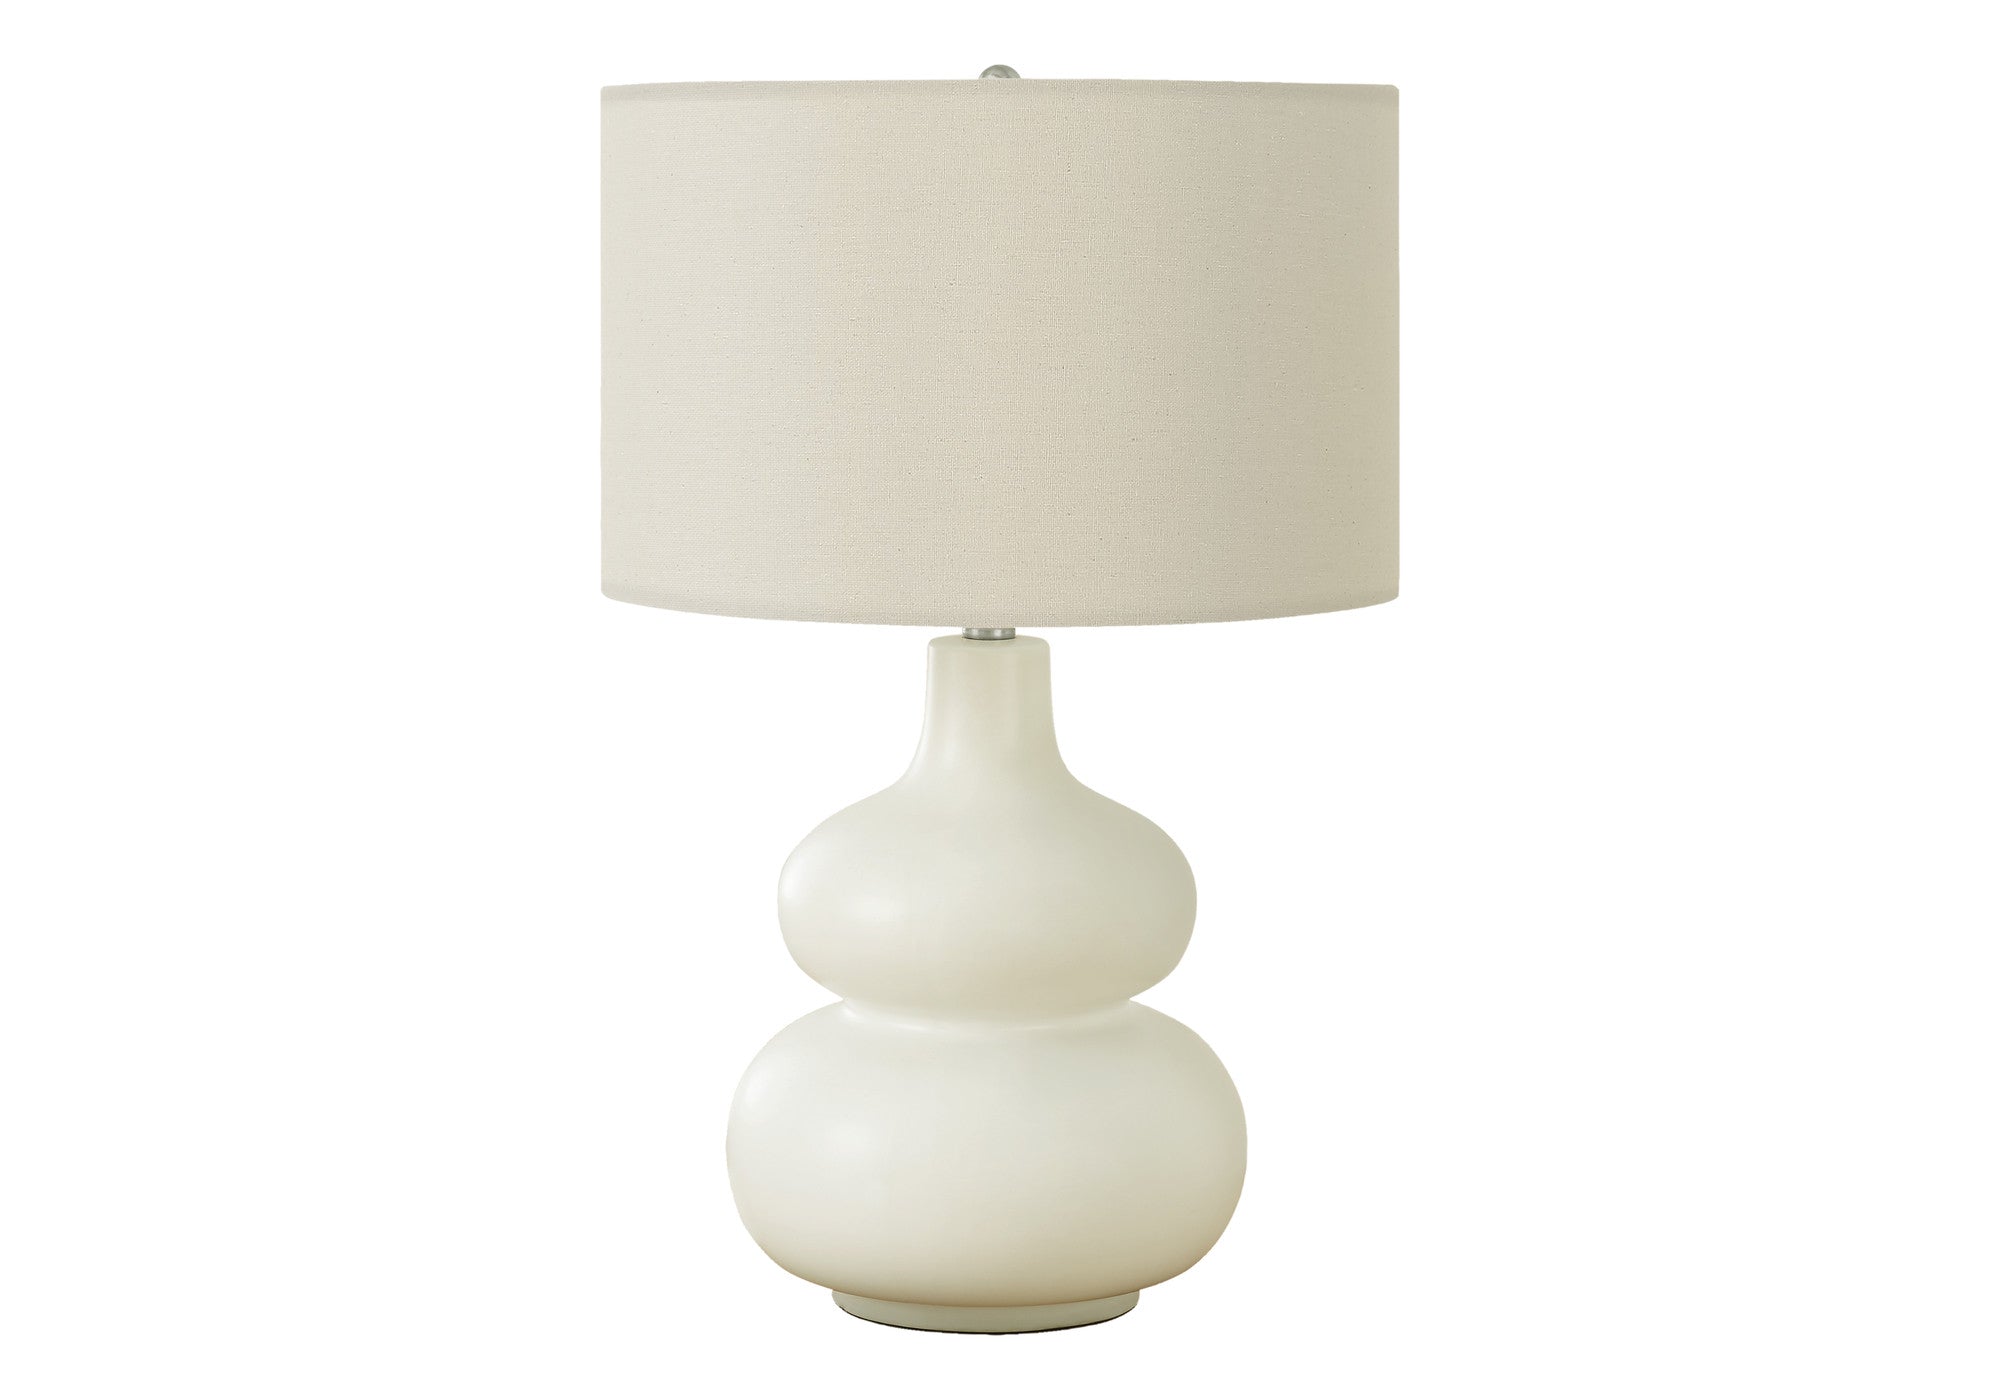 25" Cream Ceramic Gourd Table Lamp With Cream Drum Shade